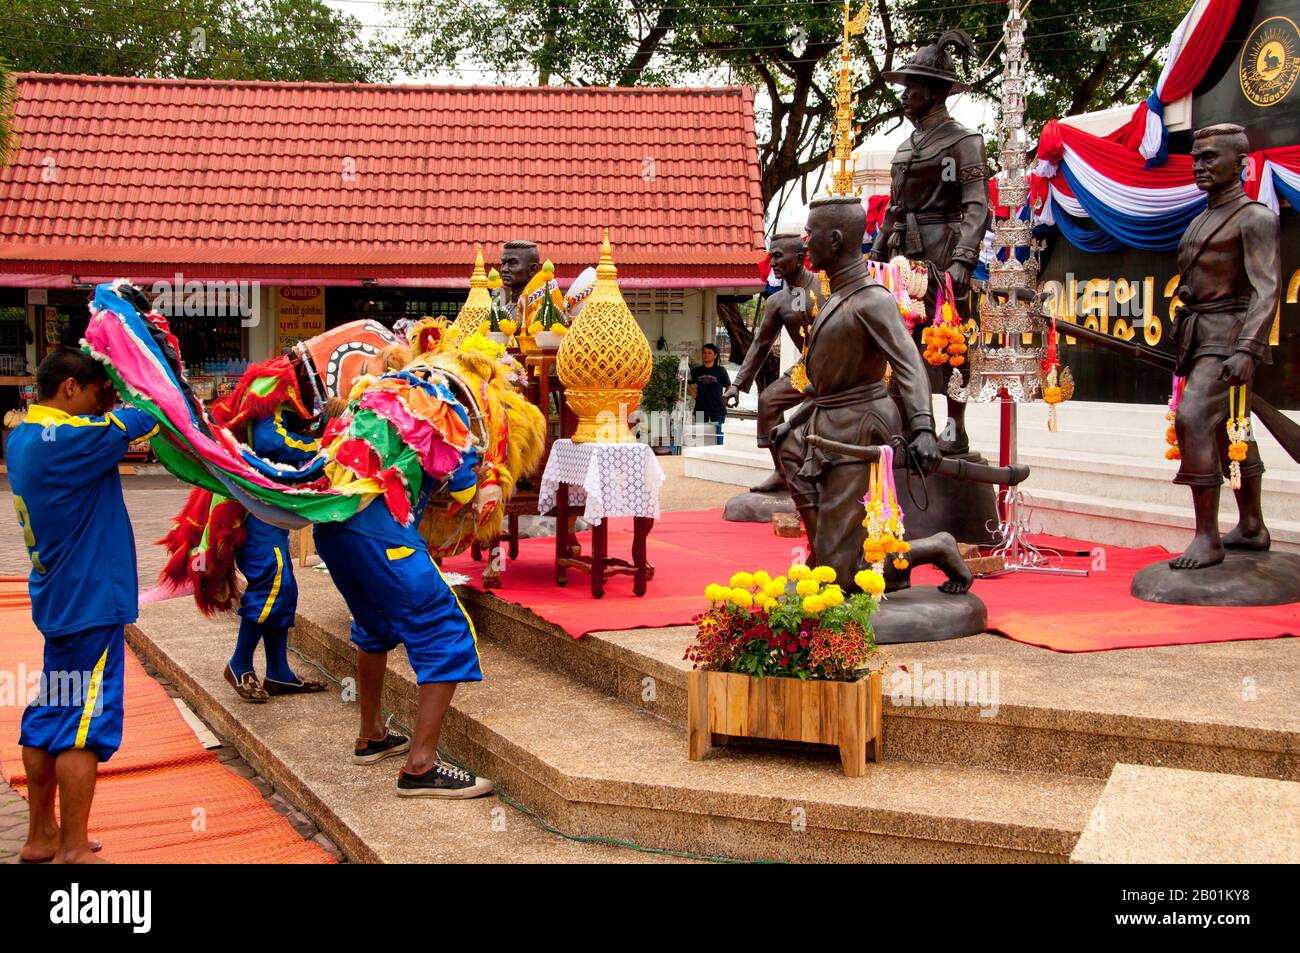 Chanthaburi è celebrato attraverso la Thailandia a causa dei suoi legami eroici con il re Taksin il Grande, il conquistatore che ha combattuto indietro contro gli occupanti birmani di Ayutthaya nel 1767 e ha continuato a ristabilire l'indipendenza tailandese. Anche se Taksin governò brevemente solo dalla sua nuova capitale a Thonburi (1768-82), il suo nome rimane molto venerato, e viene commemorato attraverso Chanthaburi in un certo numero di santuari, monumenti, parchi e anche un cantiere navale. Re Taksin (Somdet Phra Chao Taksin Maharat; Thai: สมเด็จพระเจ้าตากสินมหาราช; 17 aprile 1734 – 7 aprile 1782) è stato l'unico re del regno di Thonburi. Io Foto Stock